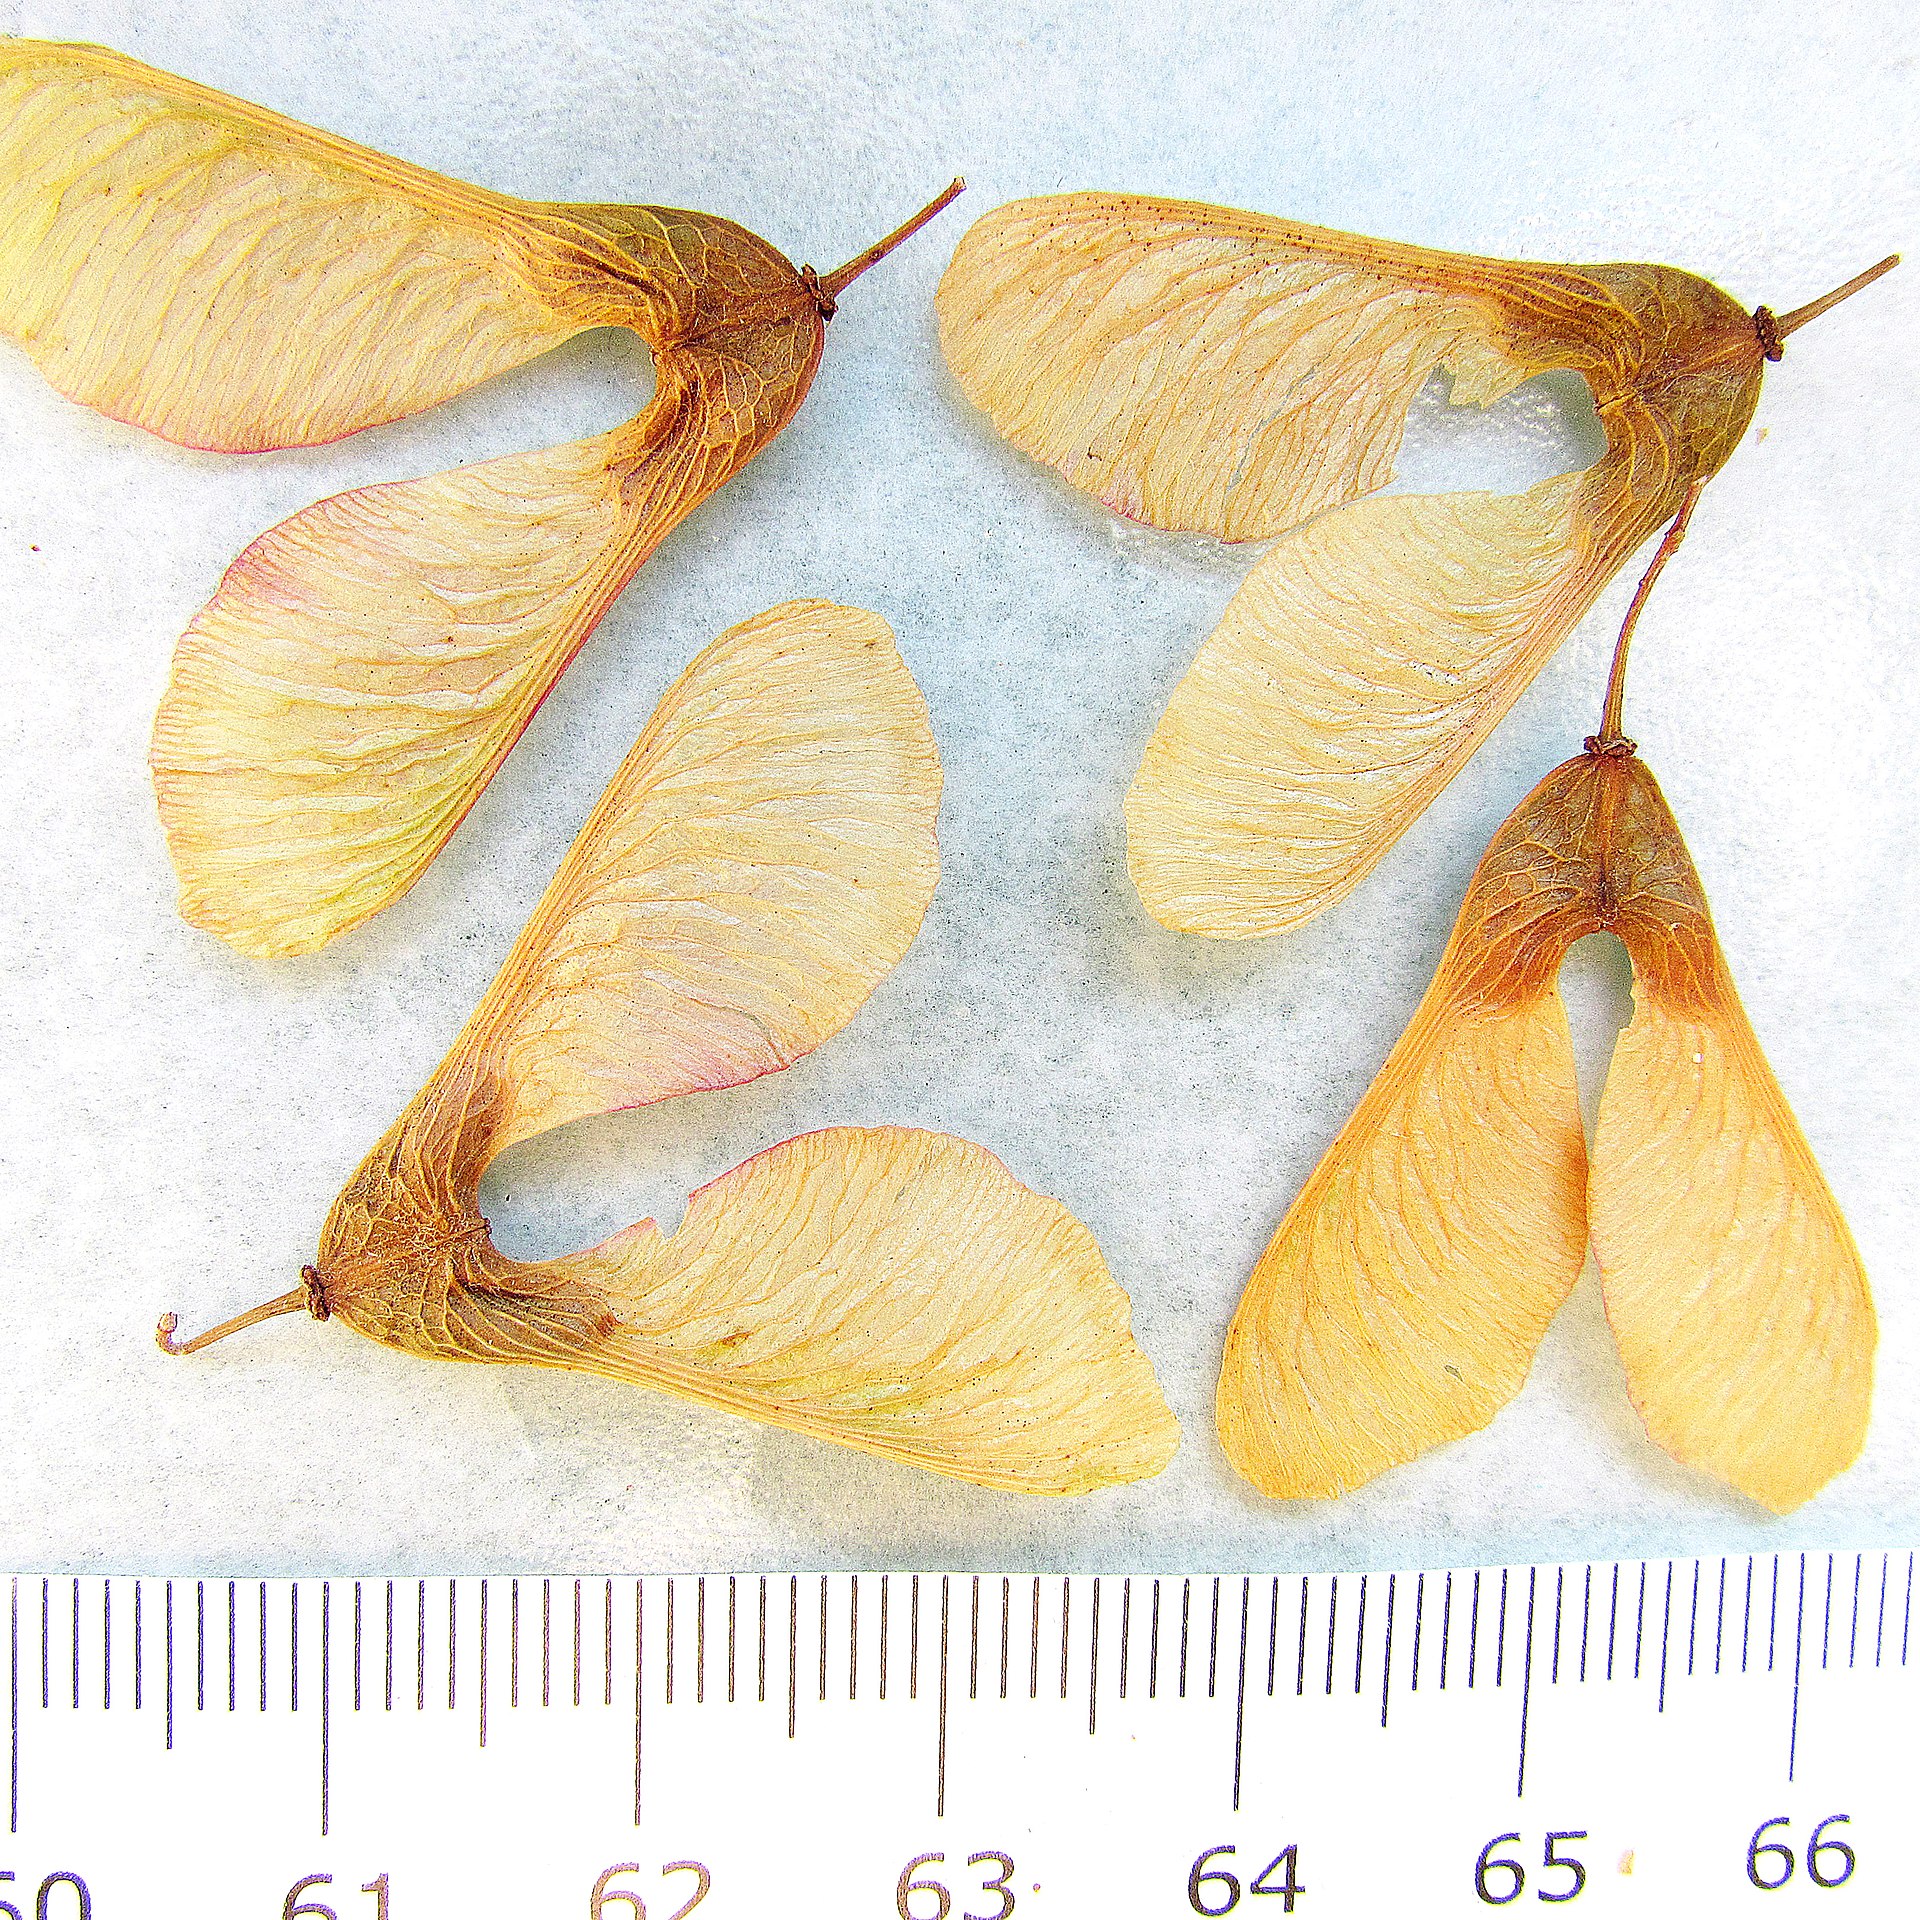 Cuatro juegos de semillas emparejadas (“helicópteros” de arce o frutos), cada semilla tiene un ala larga y plana unida a ella.